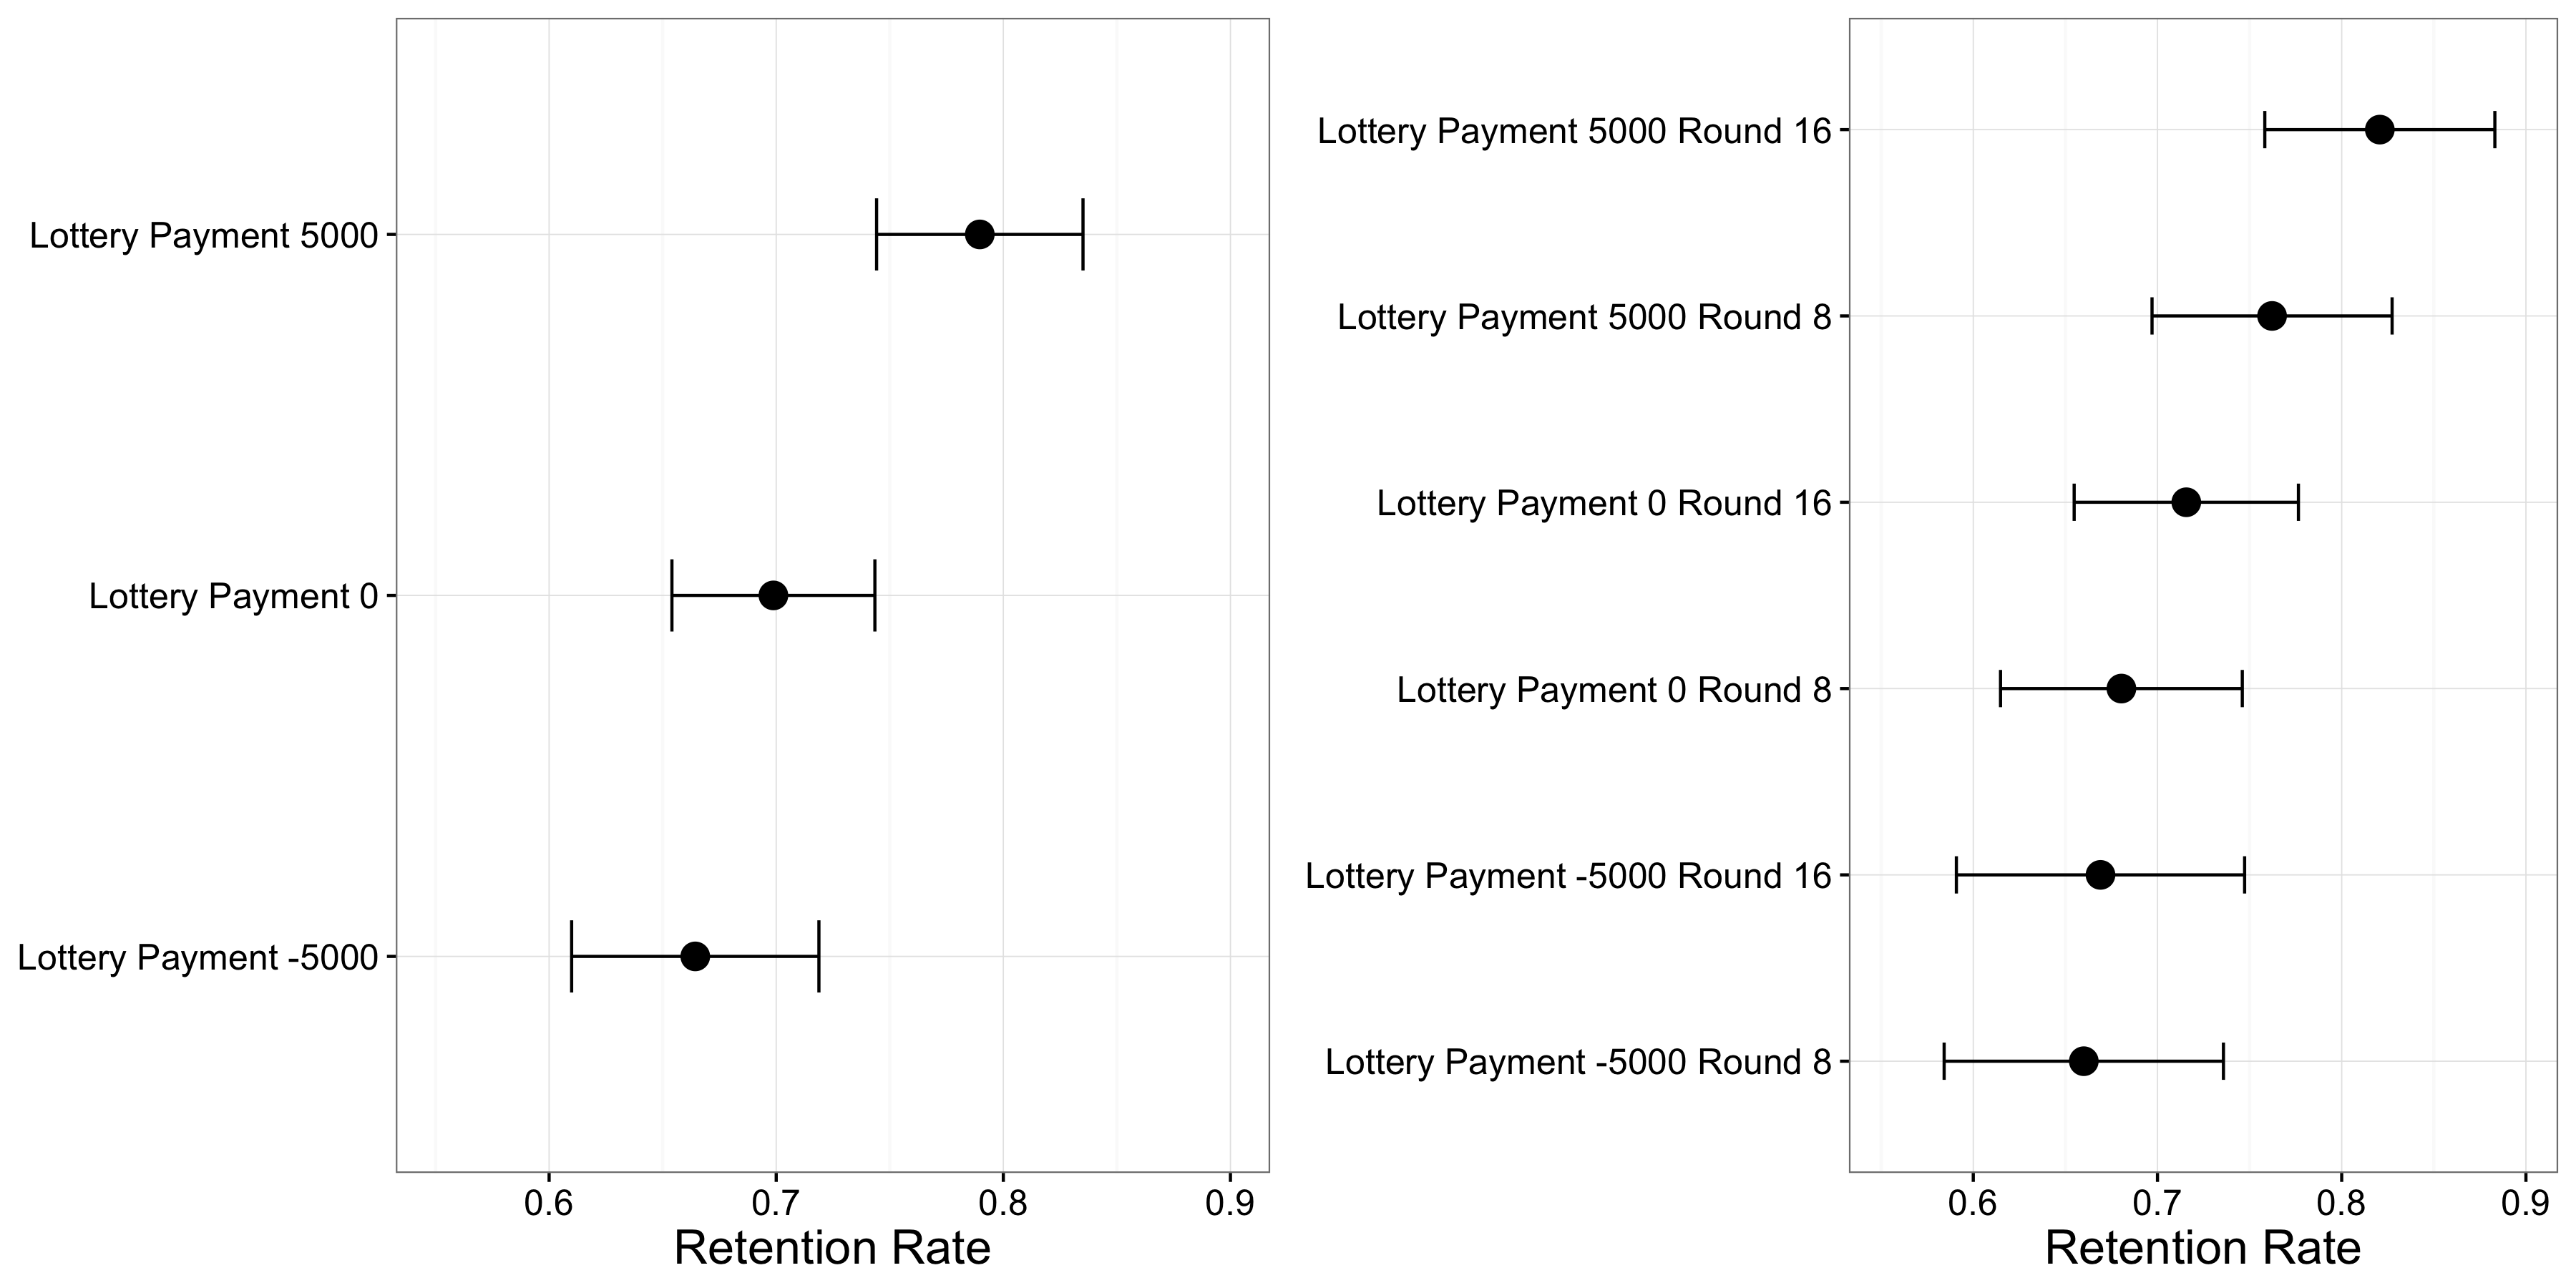 Figure 4.14: Résultats de Huber, Hill, et Lenz (2012). Les participants qui ont bénéficié de la loterie étaient plus susceptibles de conserver leur allocateur, et cet effet a été plus forte lorsque la loterie est arrivé au tour 16 juste avant le remplacement de décision que lorsqu'il est arrivé au tour 8.